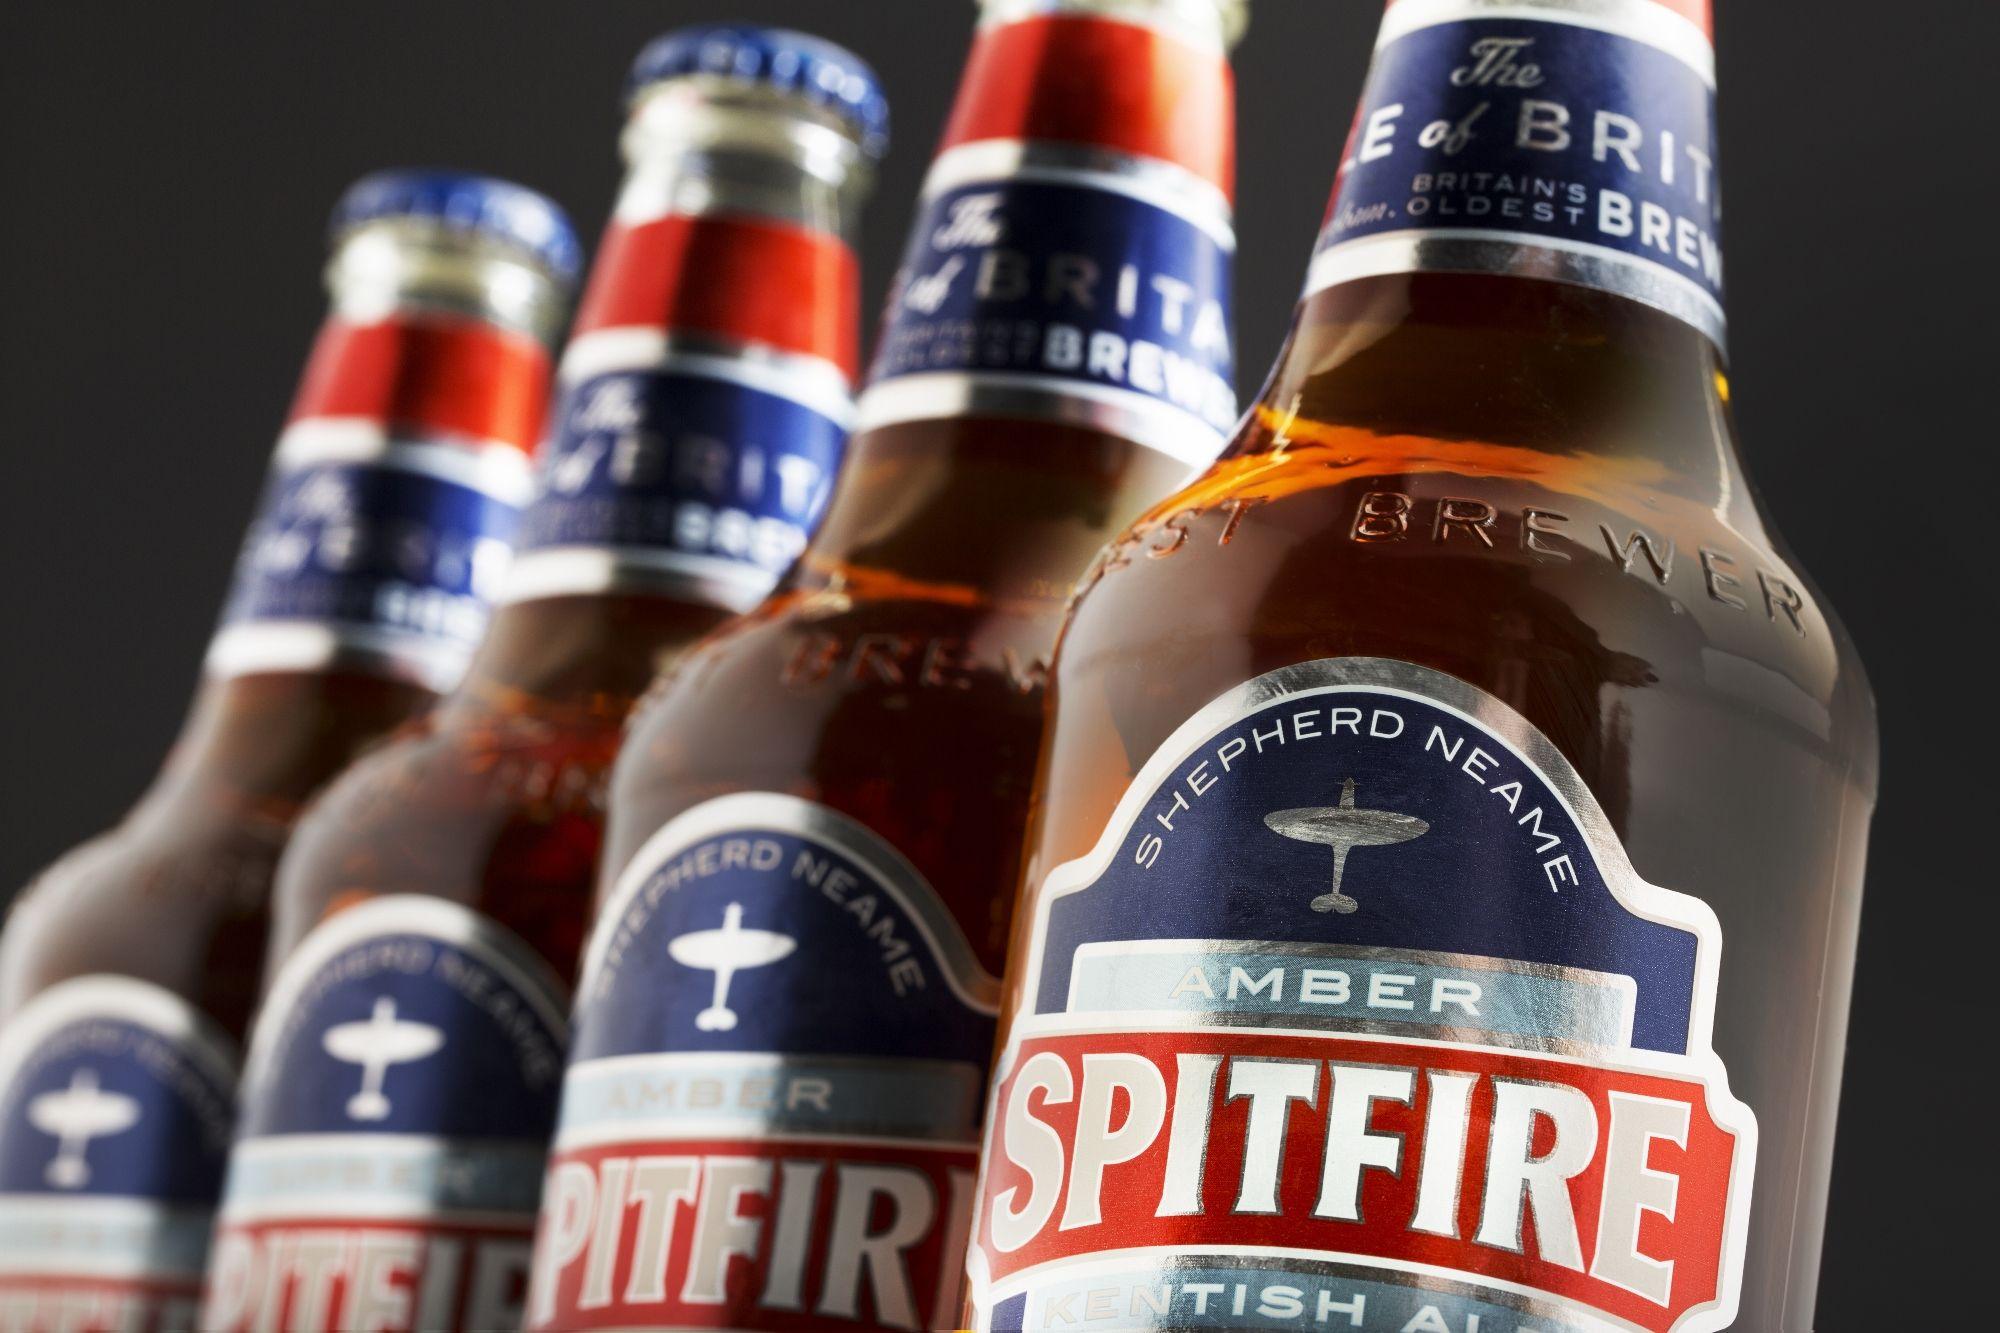 Spitfire Amber Kentish Ale